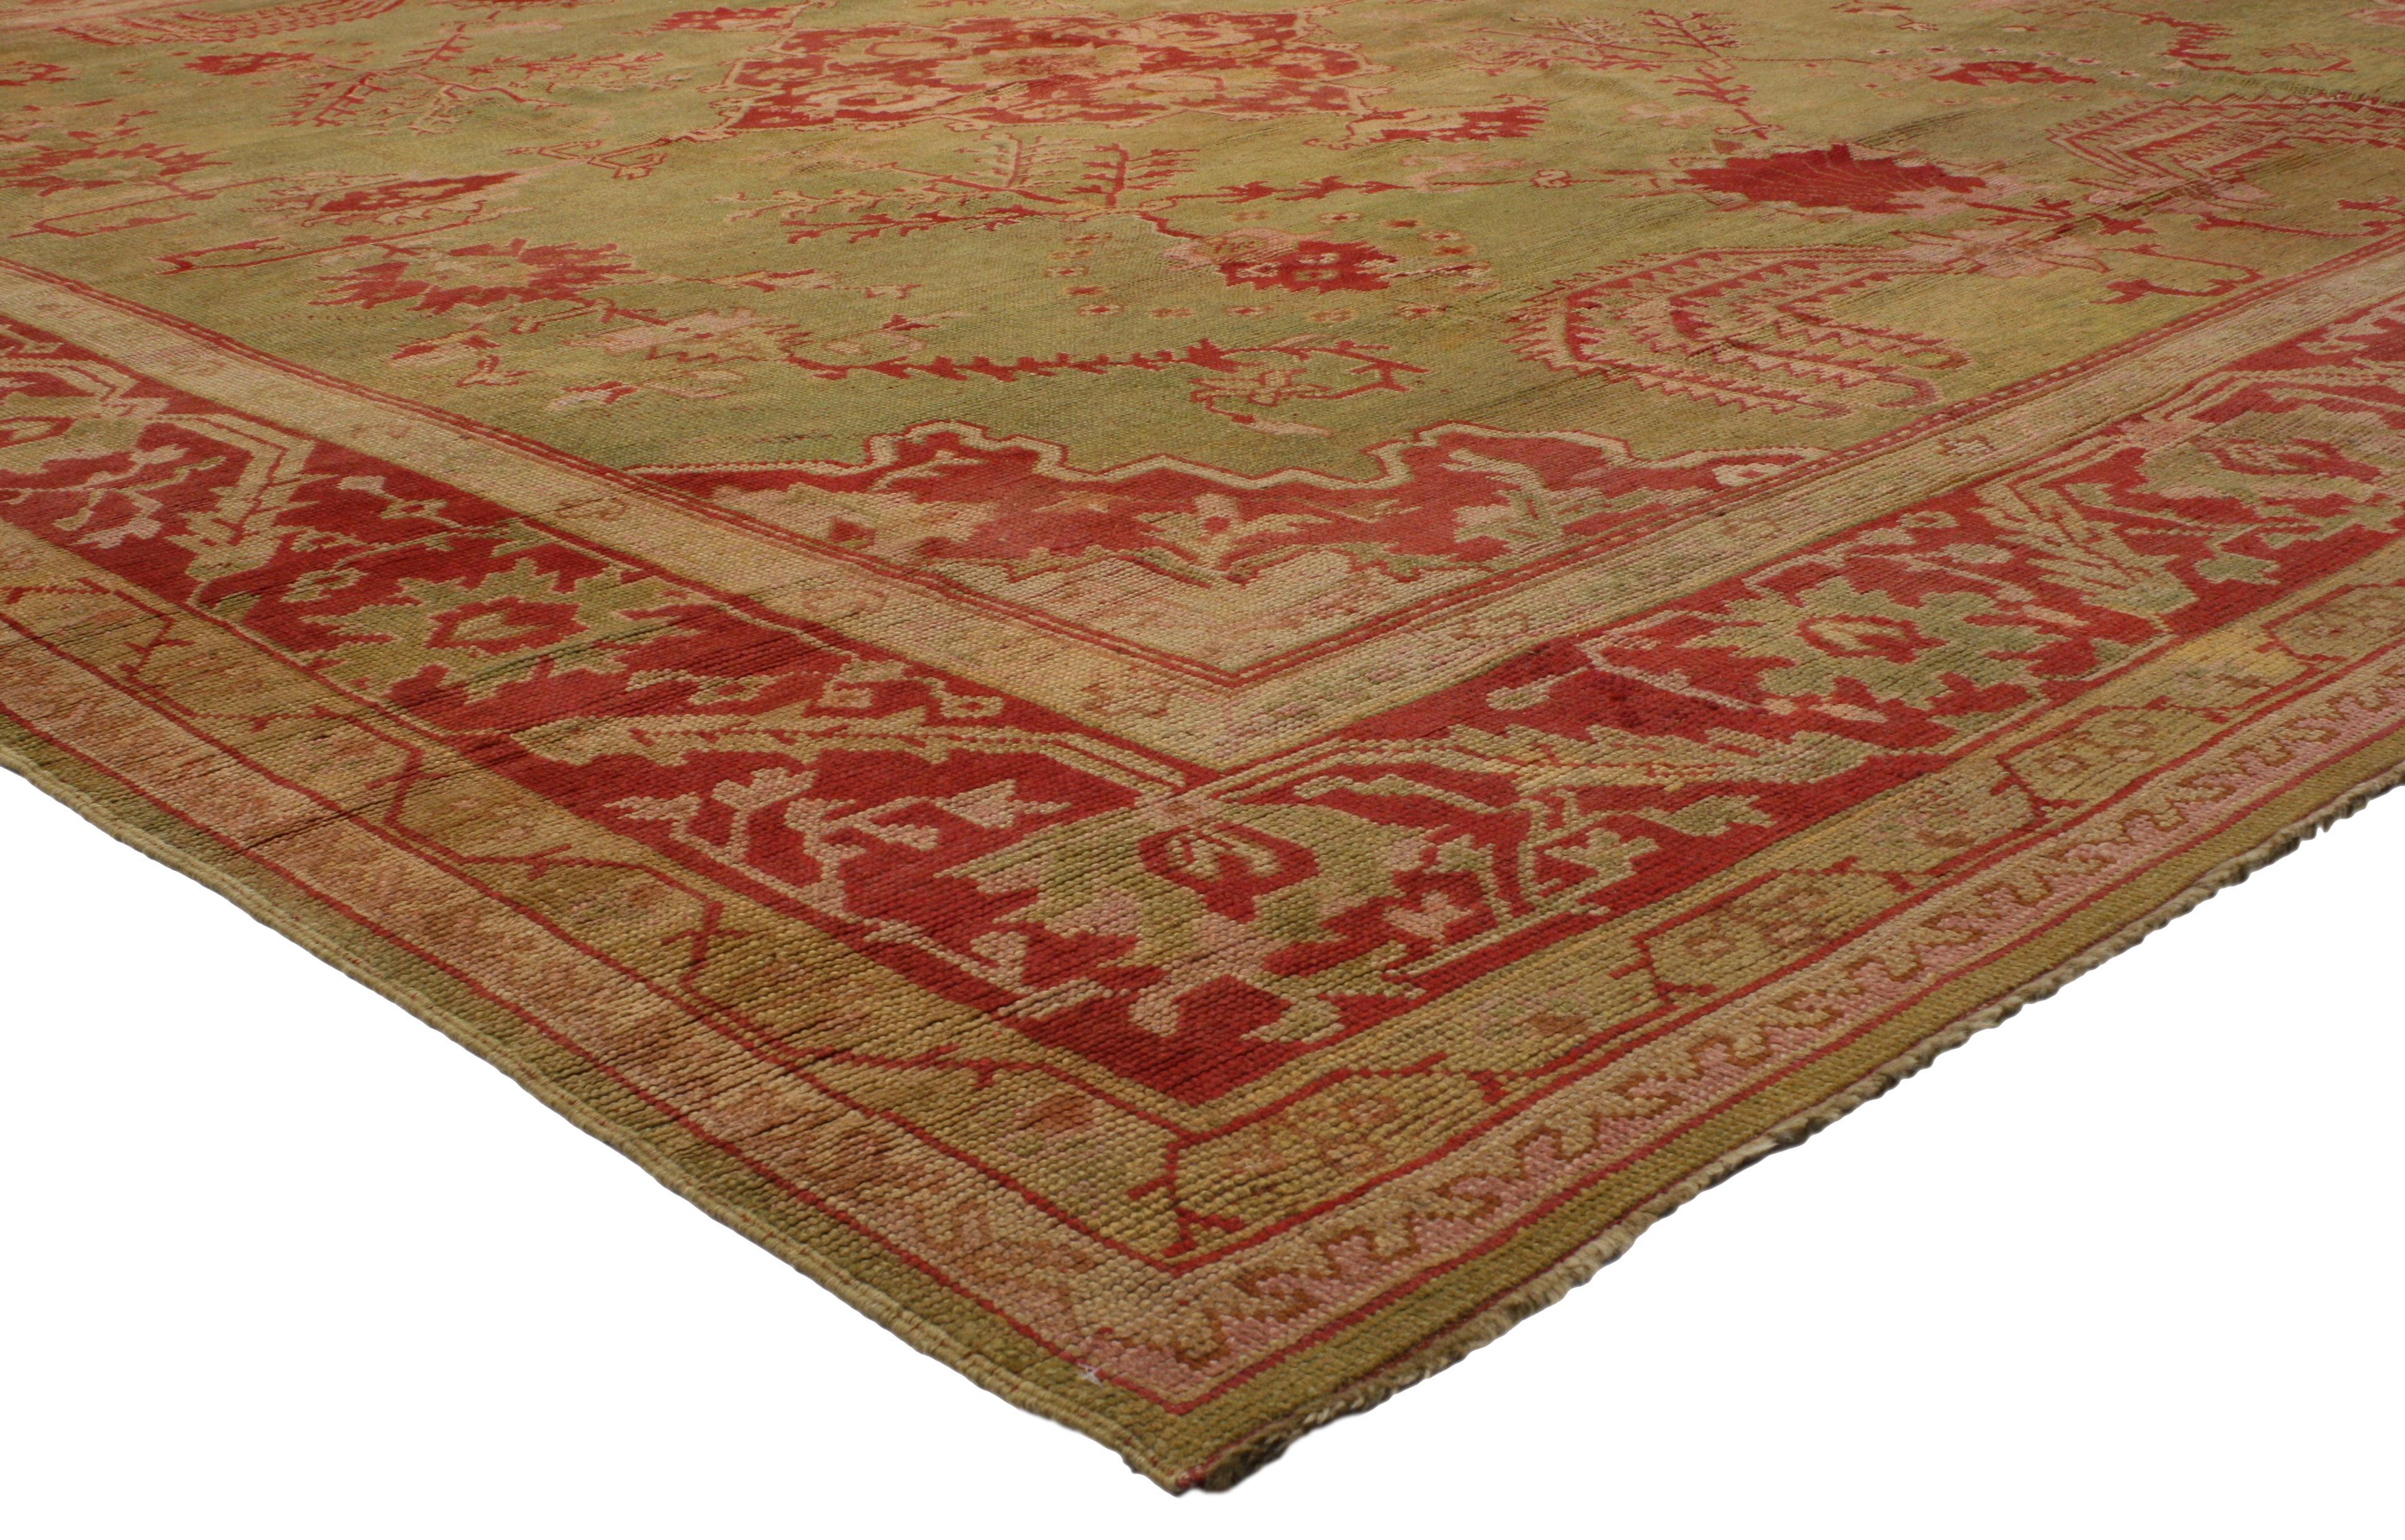 74173 Antiker türkischer Oushak-Teppich mit Trauerweiden-Muster. Dieser handgeknüpfte, farbenfrohe antike türkische Oushak-Teppich aus Wolle zeigt ein rotes Rautenmedaillon mit Palmetten-Finials auf einem abgewetzten und gedämpften Feld in